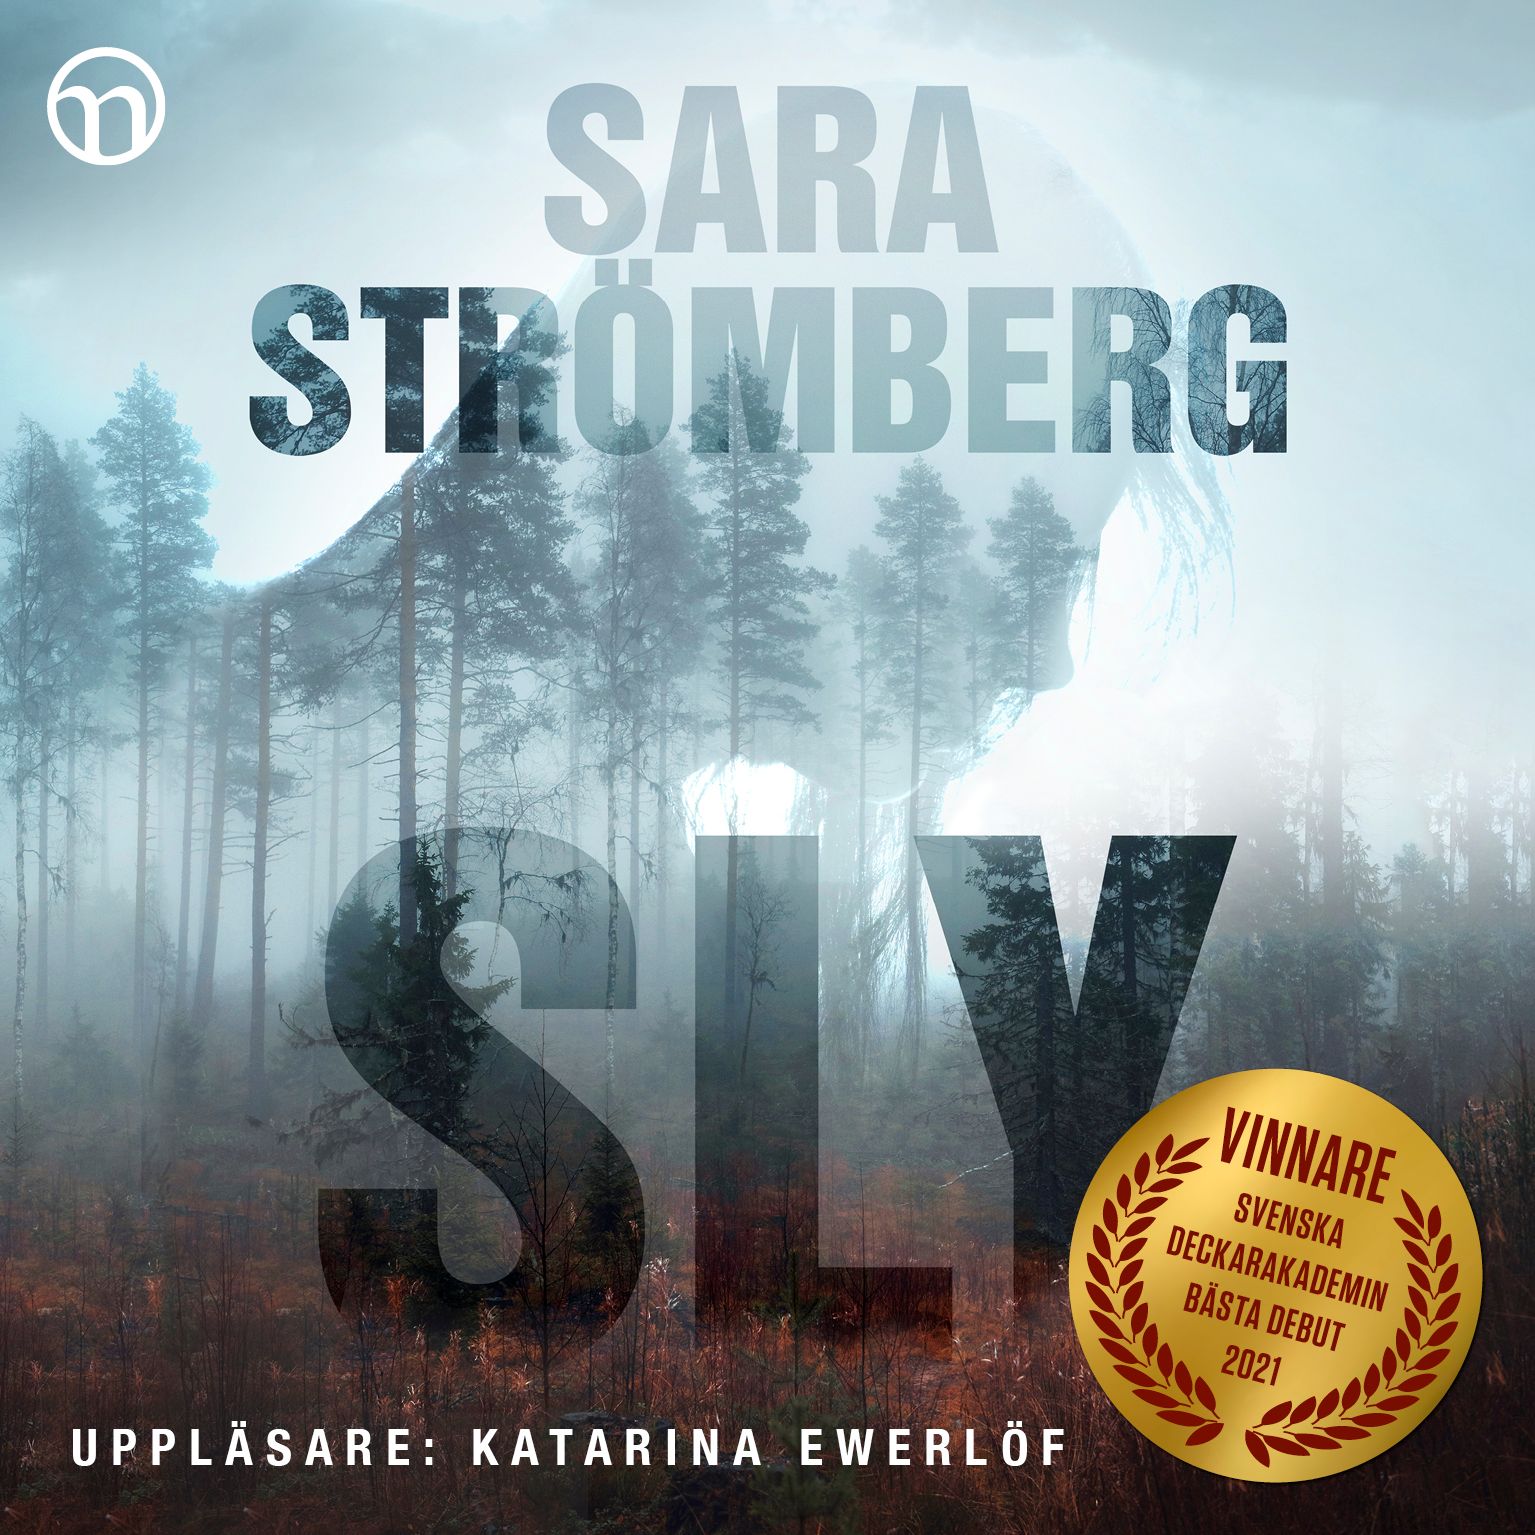 Sly, ljudbok av Sara Strömberg